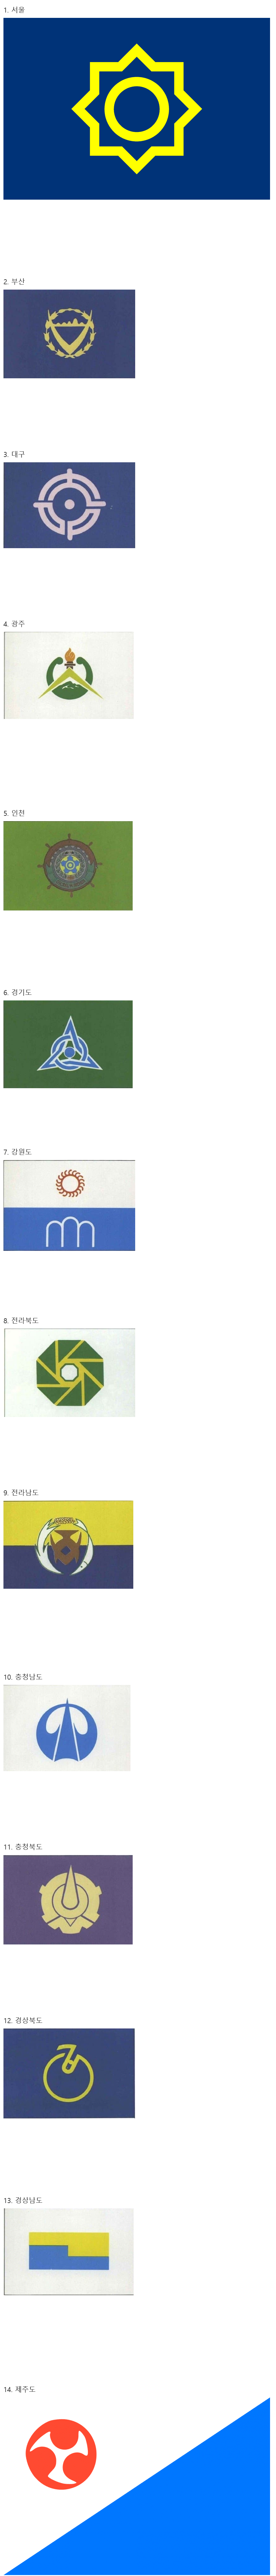 과거에 쓰였던 한국 행정구역 상징 로고